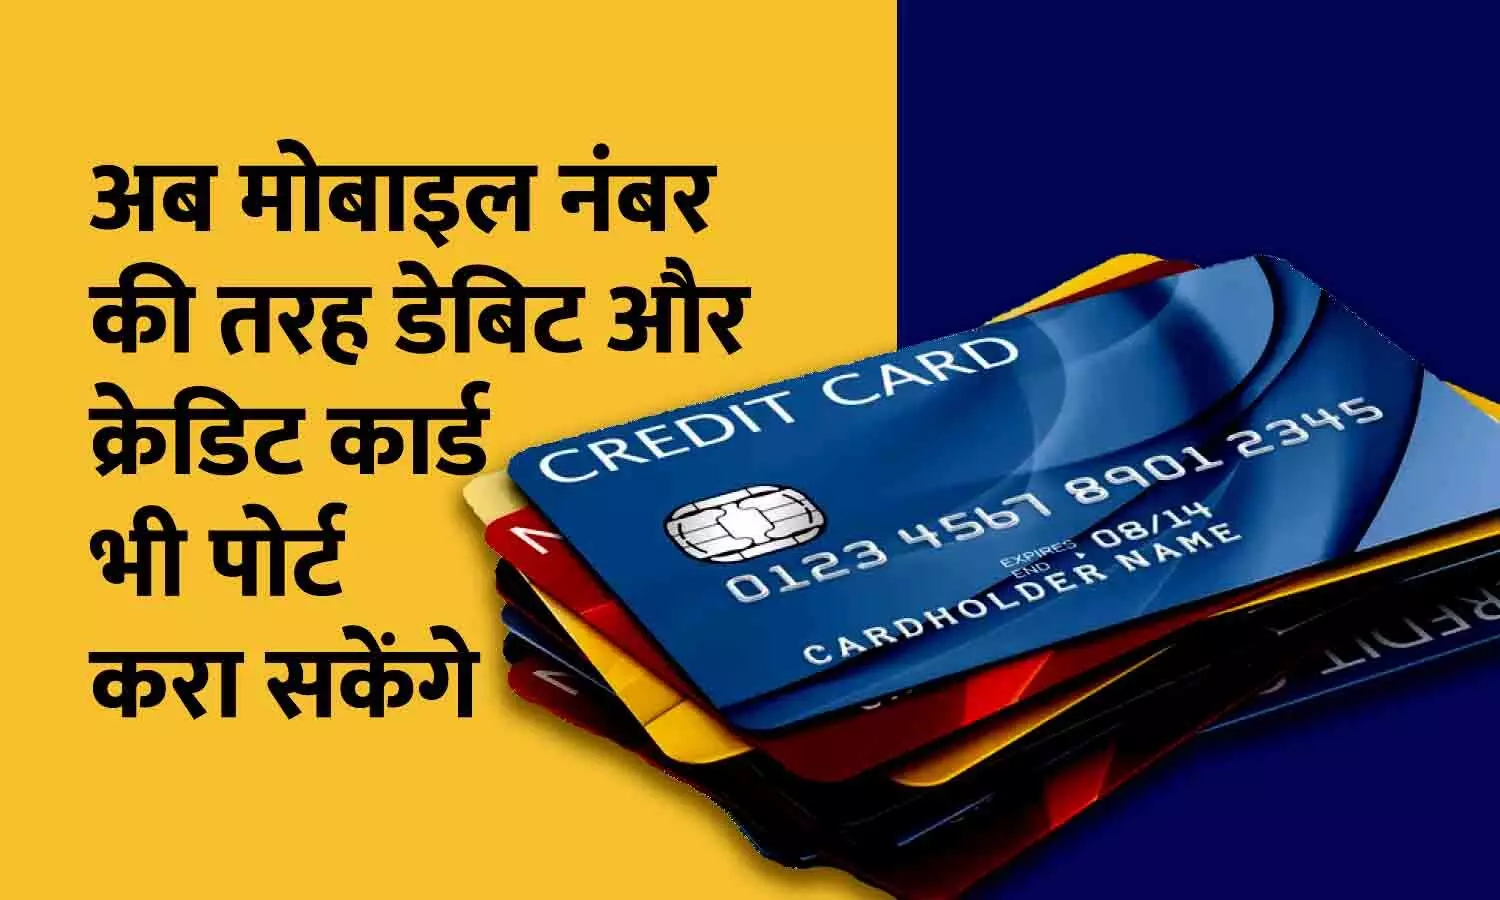 New Debit Credit Card Rules: अब मोबाइल नंबर की तरह डेबिट और क्रेडिट कार्ड भी पोर्ट करा सकेंगे, जानिए पोर्टेबिलिटी के बारे में RBI के निर्देश